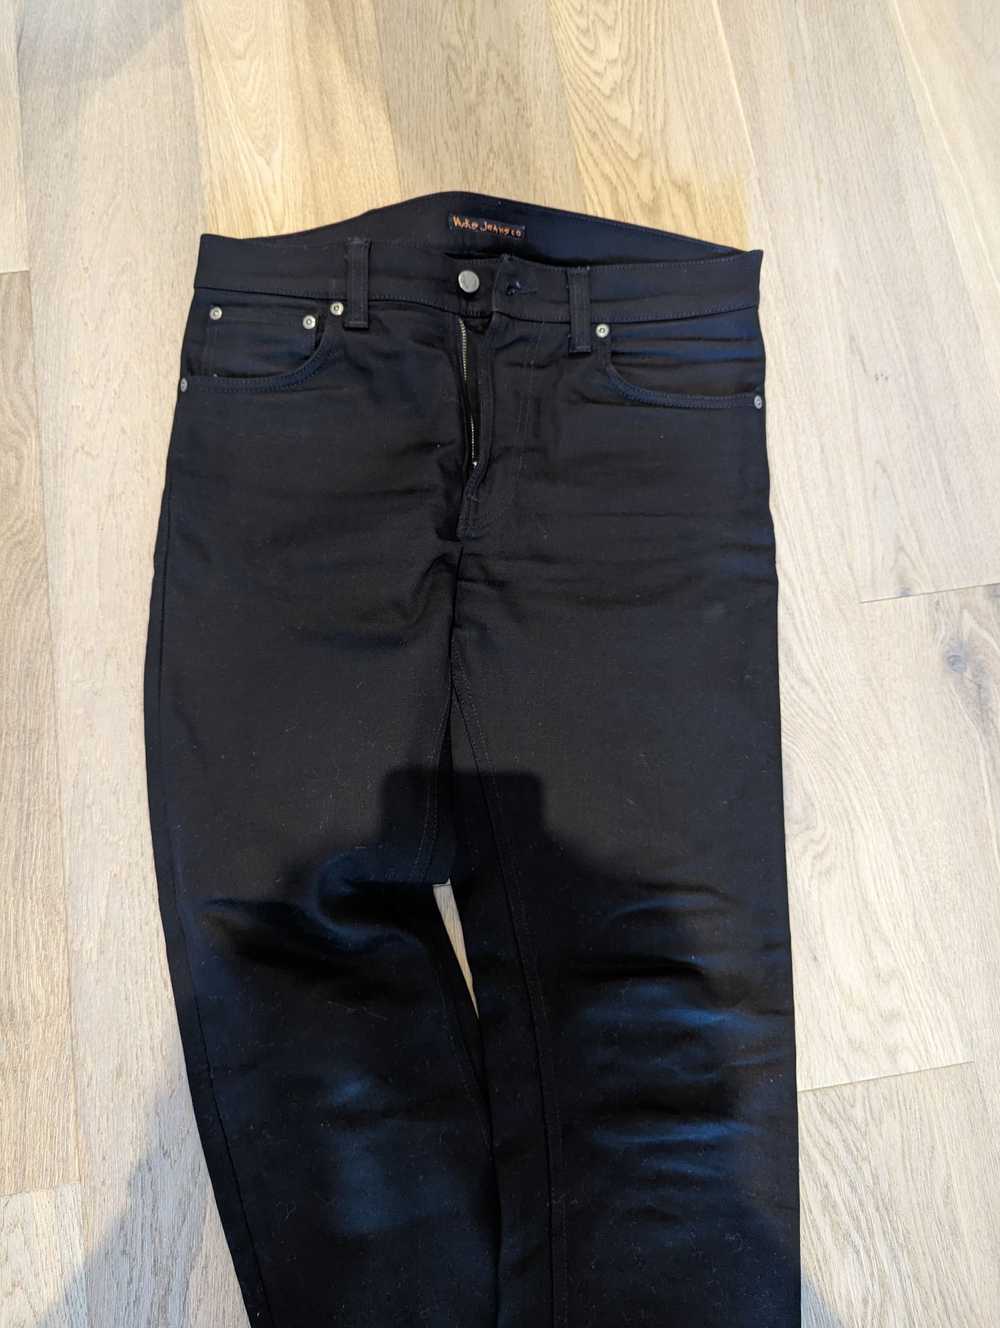 Nudie Jeans Nudie Jeans - Lean Dean Dry Cold Blac… - image 5